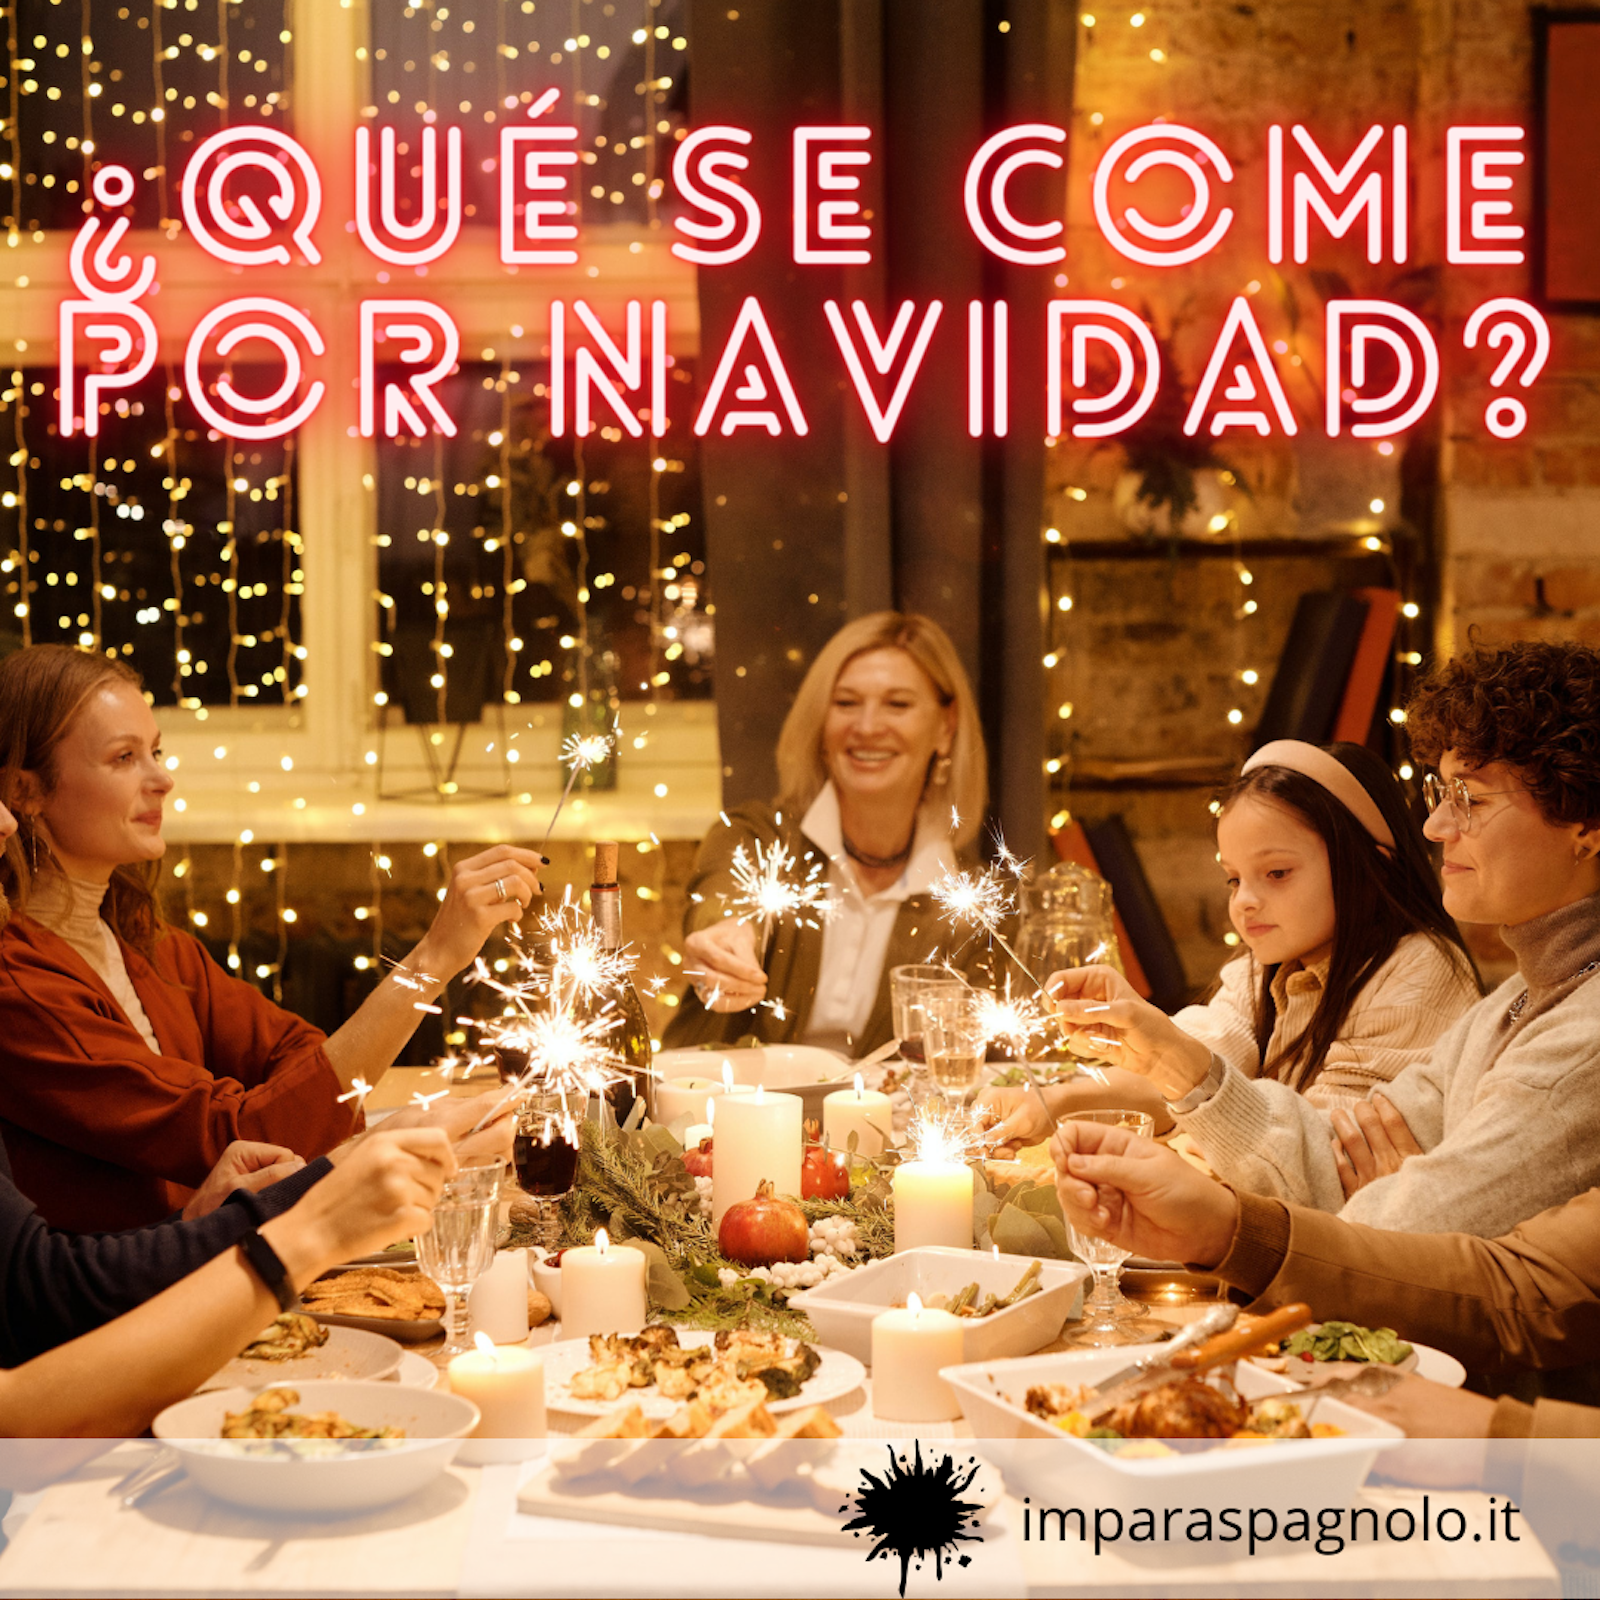 Cultura spagnola e latinoameriana: ¿Qué se come por navidad?